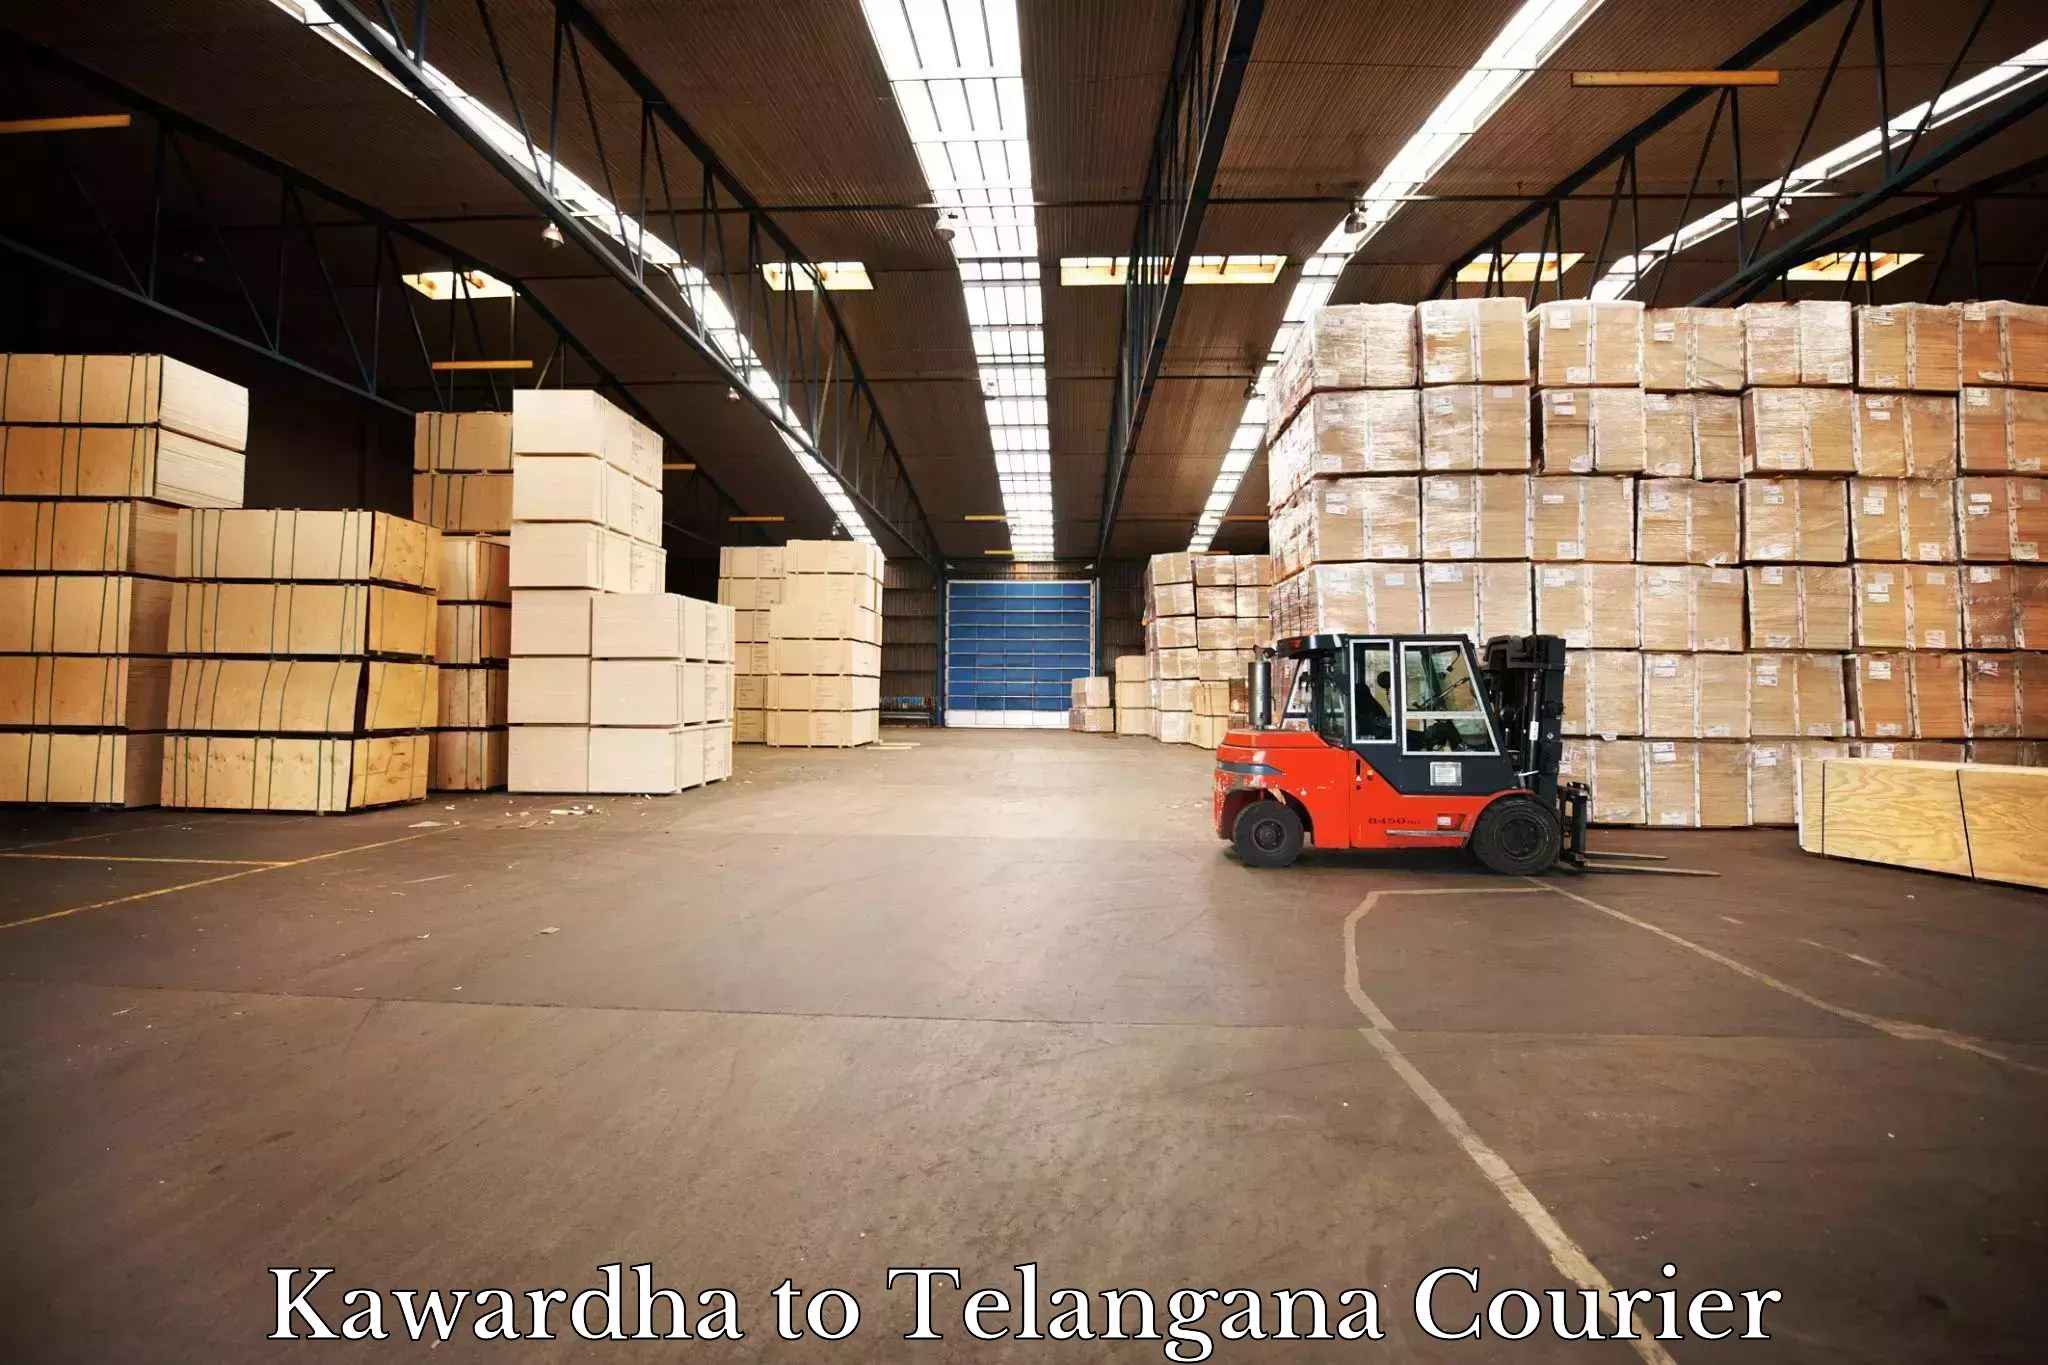 24/7 courier service in Kawardha to Jogulamba Gadwal